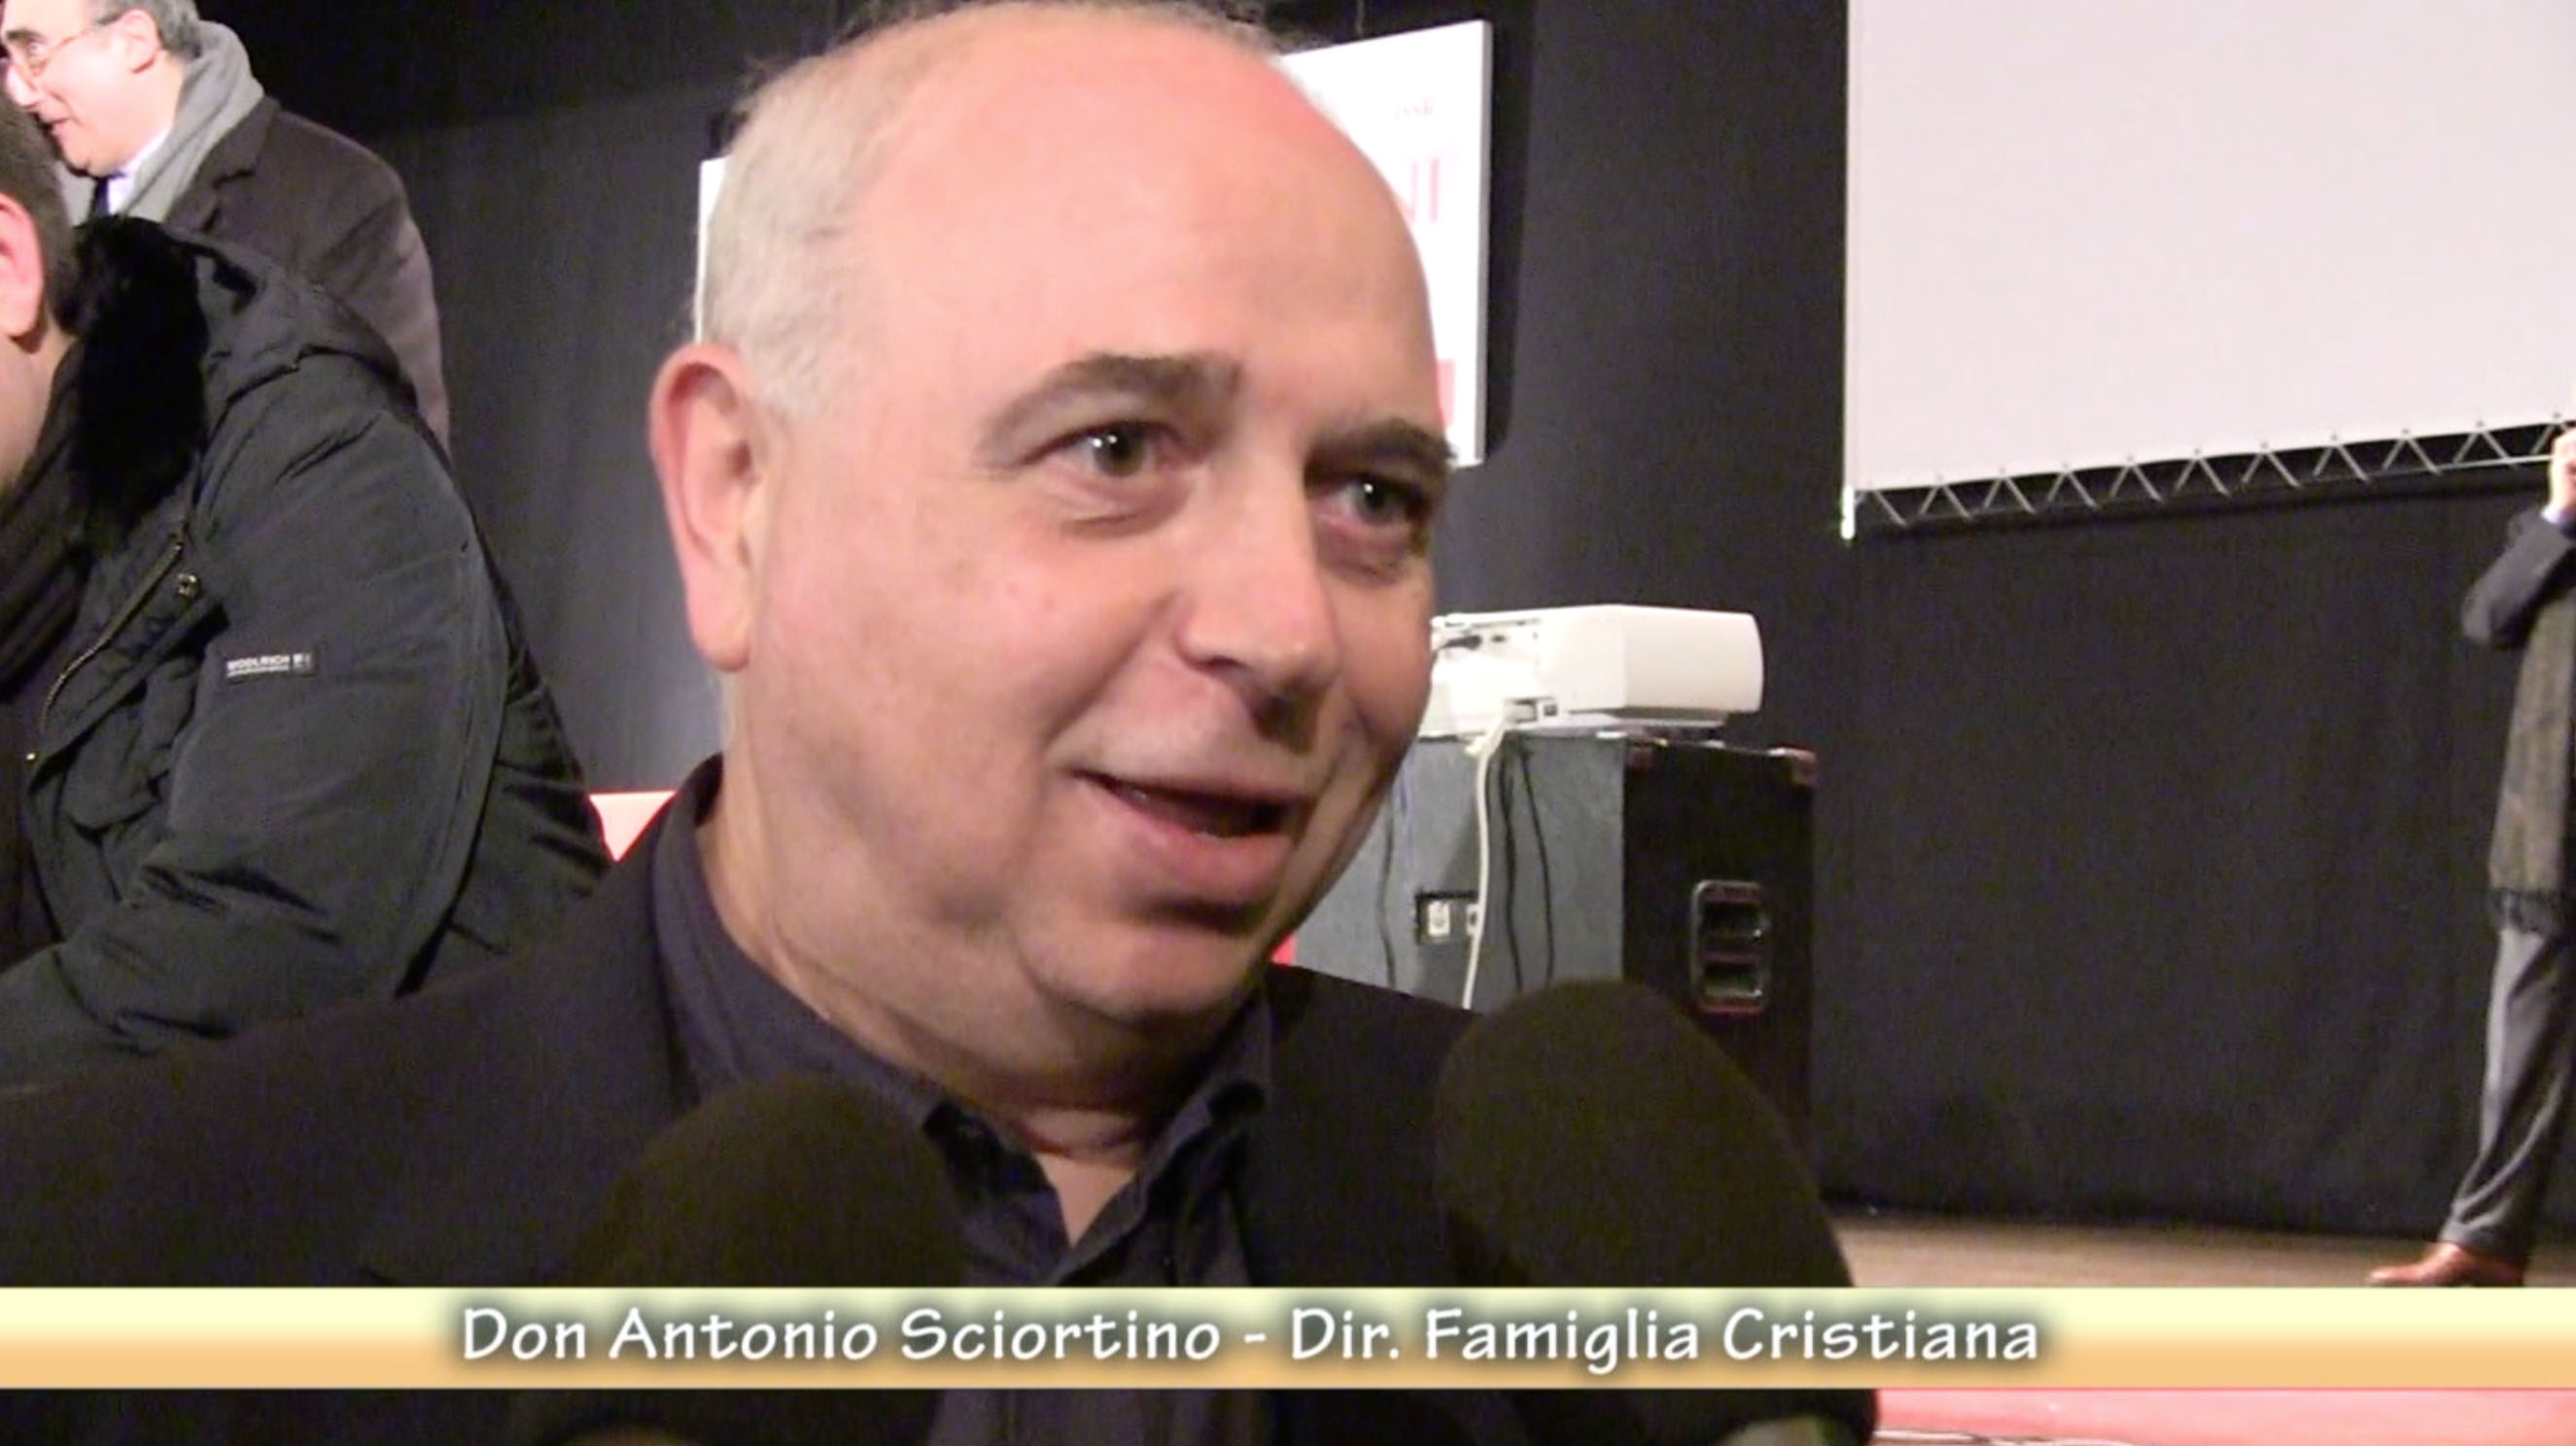 Antonio Sciortino - Direttore Famiglia Cristiana